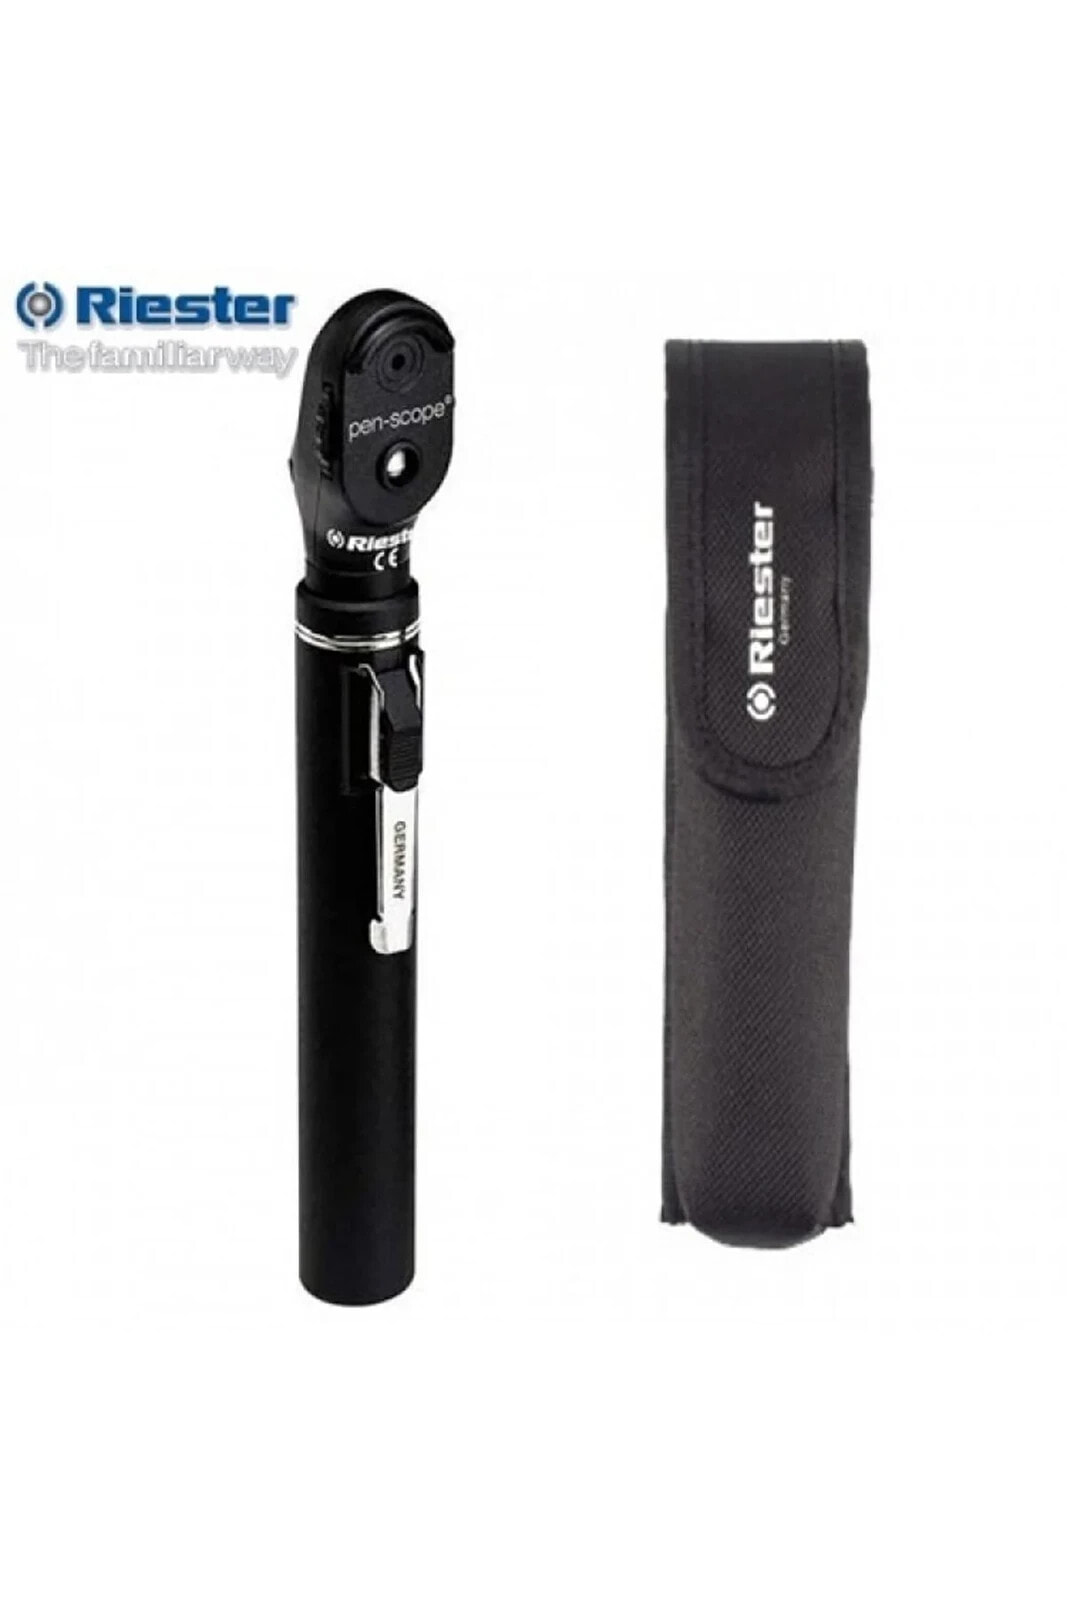 Riester Pen-scope Oftalmaskop 2.7v R2076